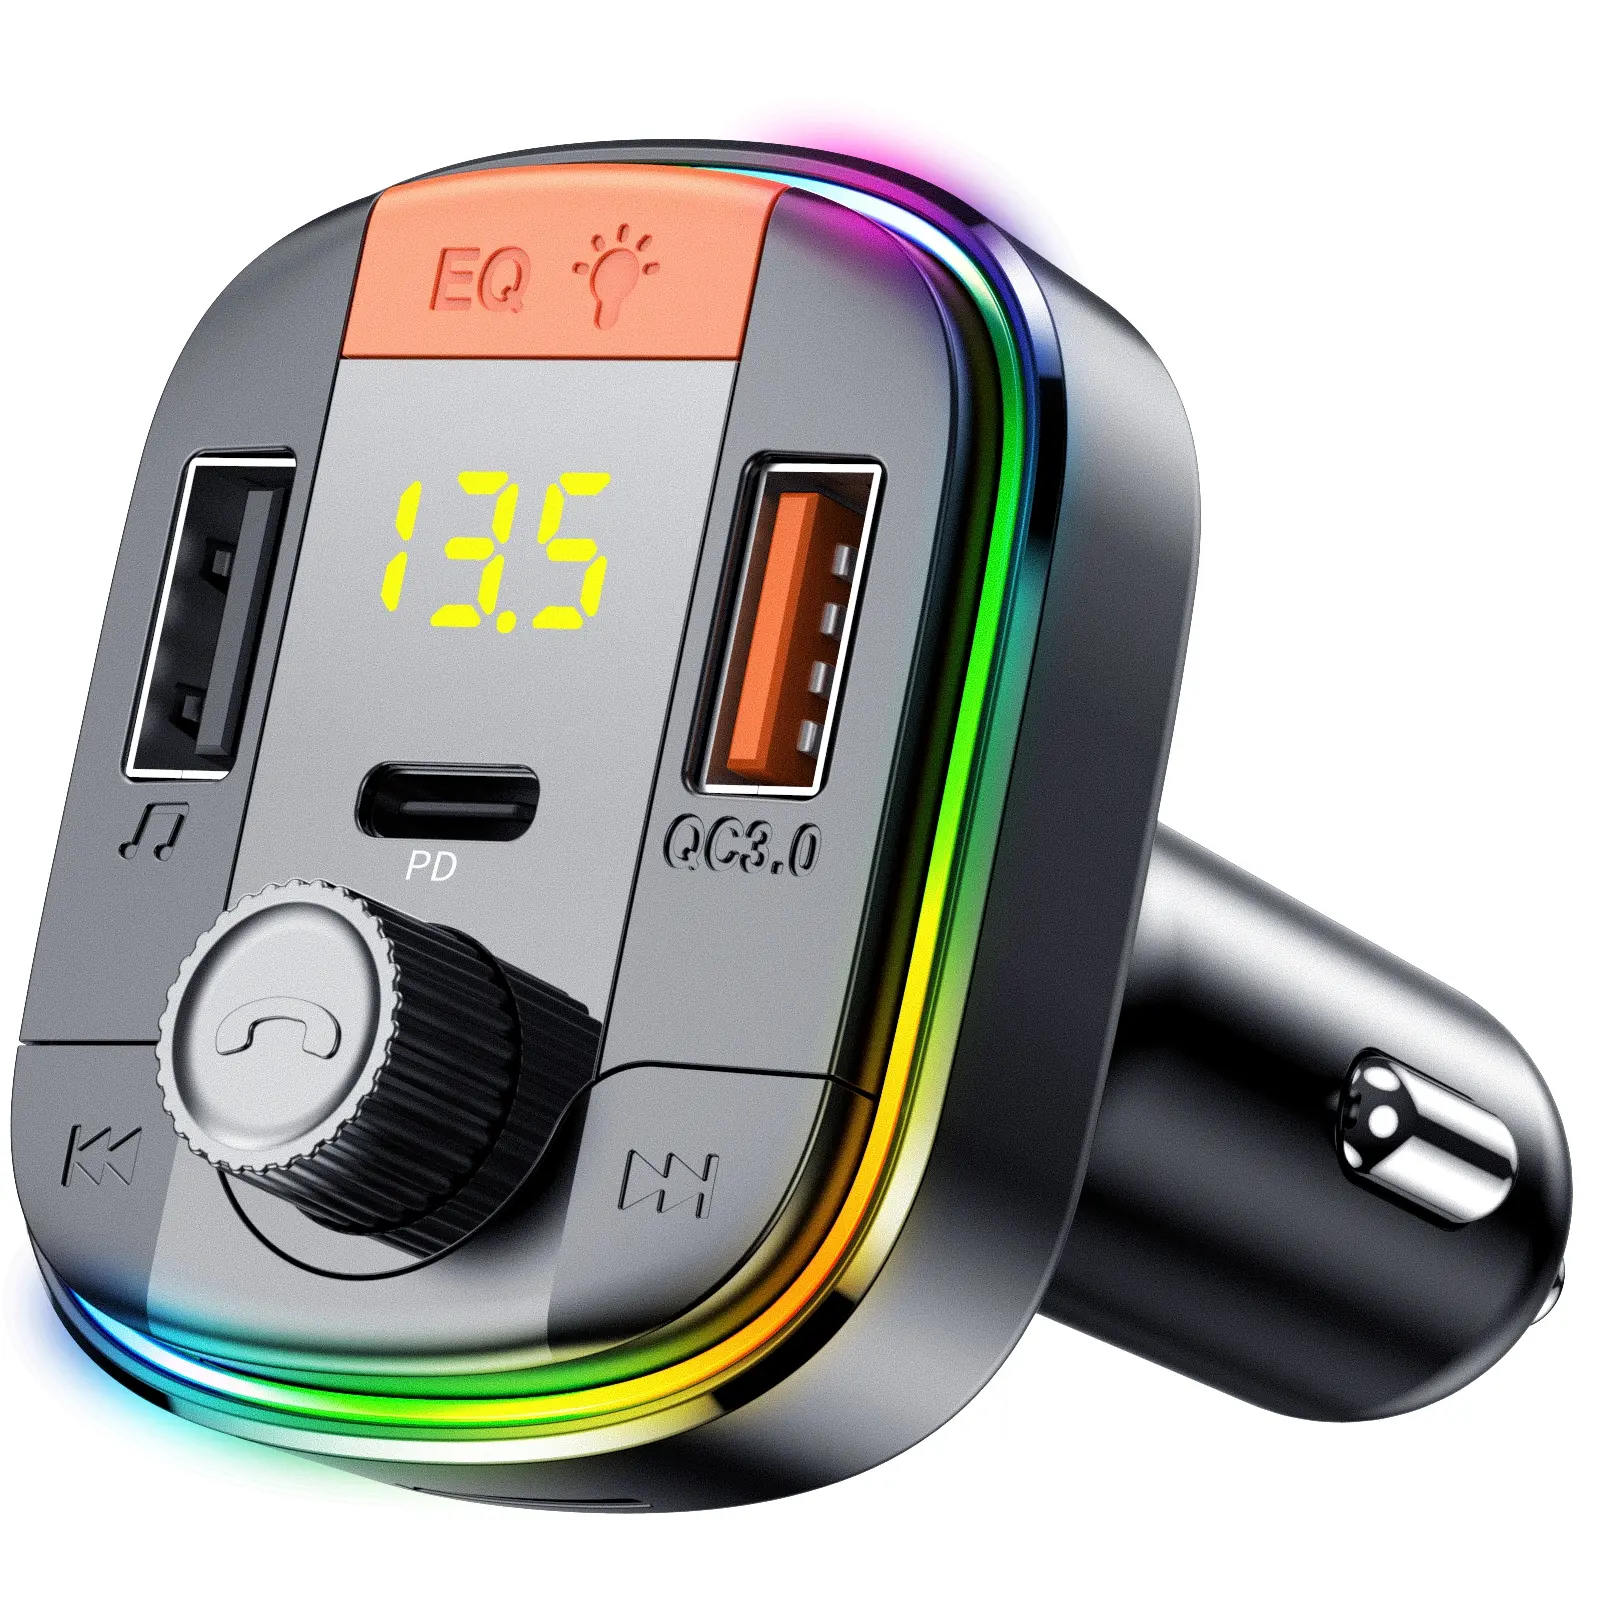 อุปกรณ์ส่งสัญญาณ Fm บลูทูธ T832ไร้สาย5.0,เครื่องเล่นเพลง USB MP3สำหรับรถยนต์รองรับเครื่องชาร์จในรถยนต์ QC 3.0